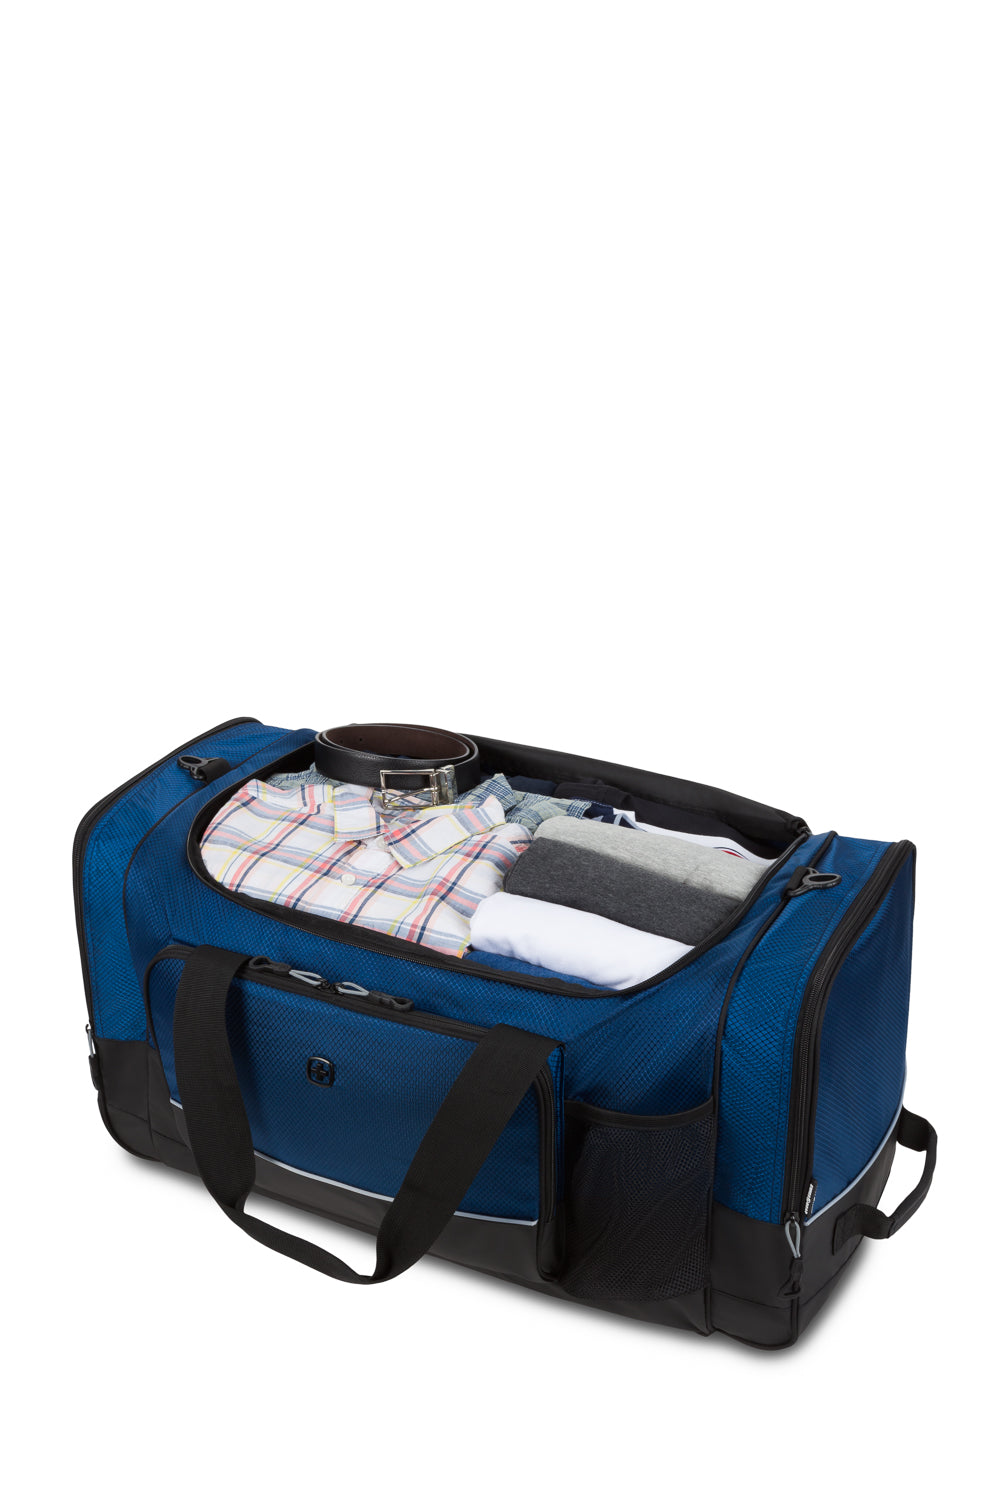 SwissGear 9000 28" Apex Duffel Bag